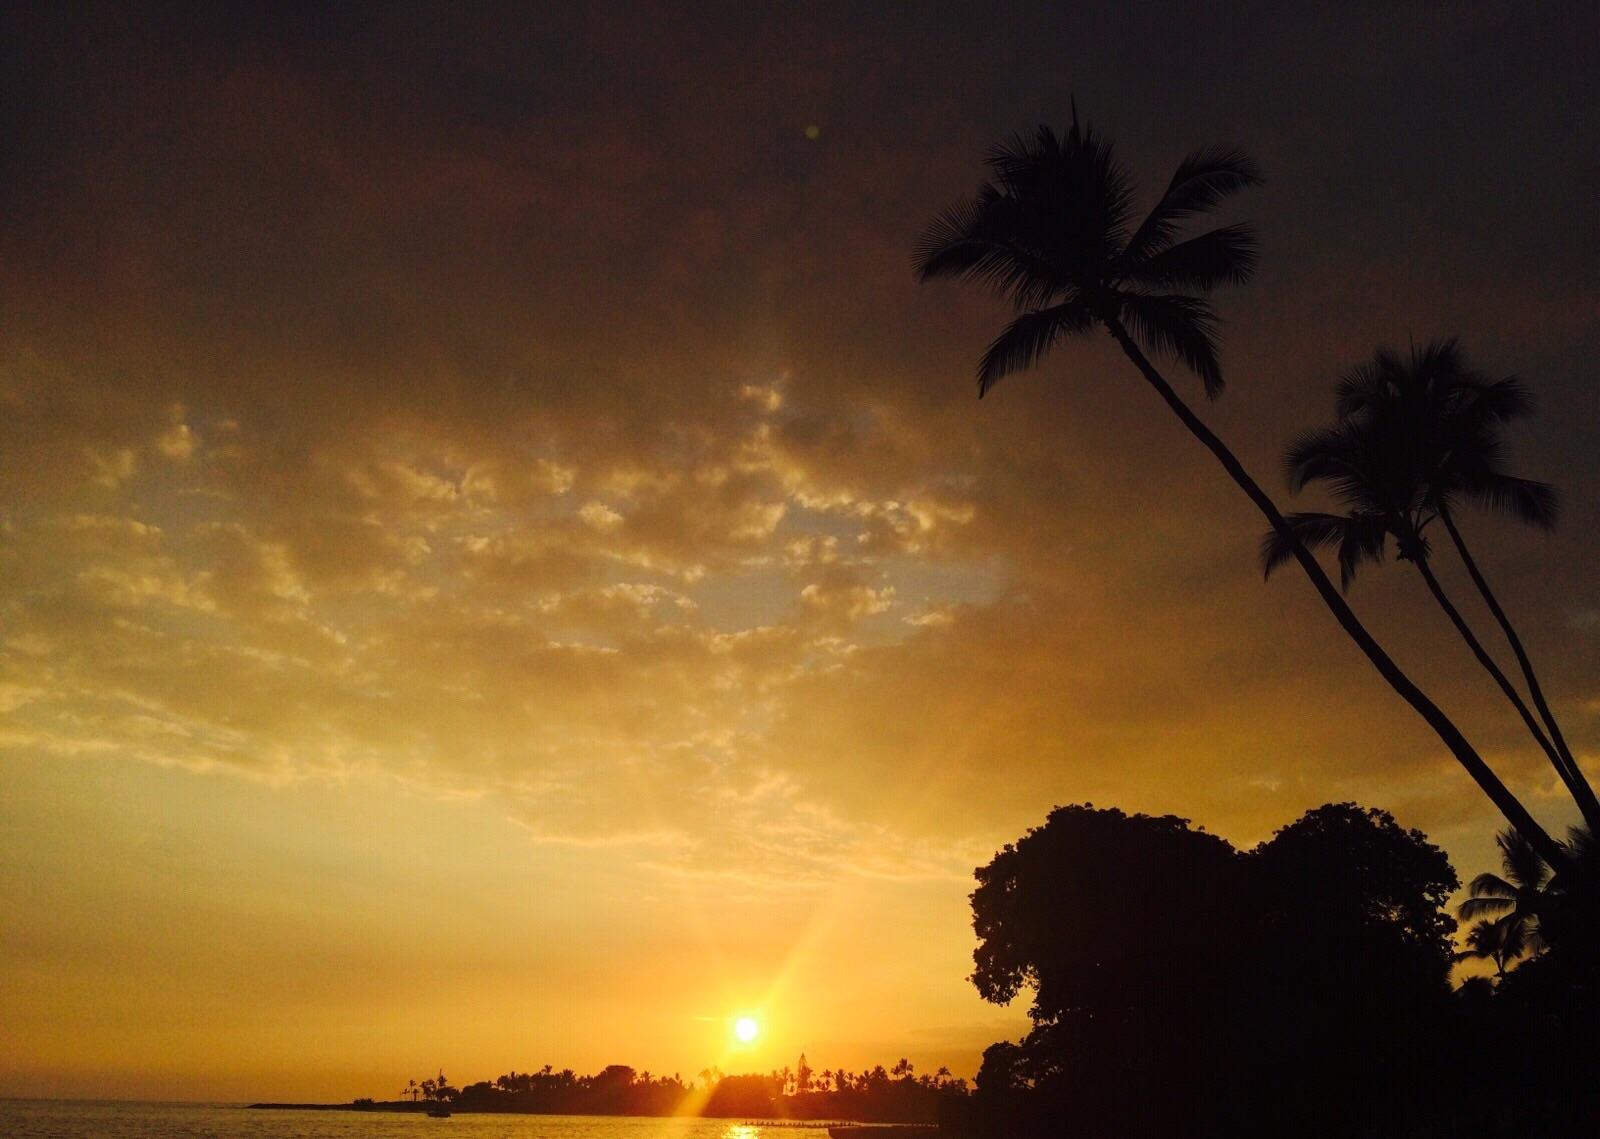 日落 夏威夷 热带 - Pixabay上的免费照片 - Pixabay